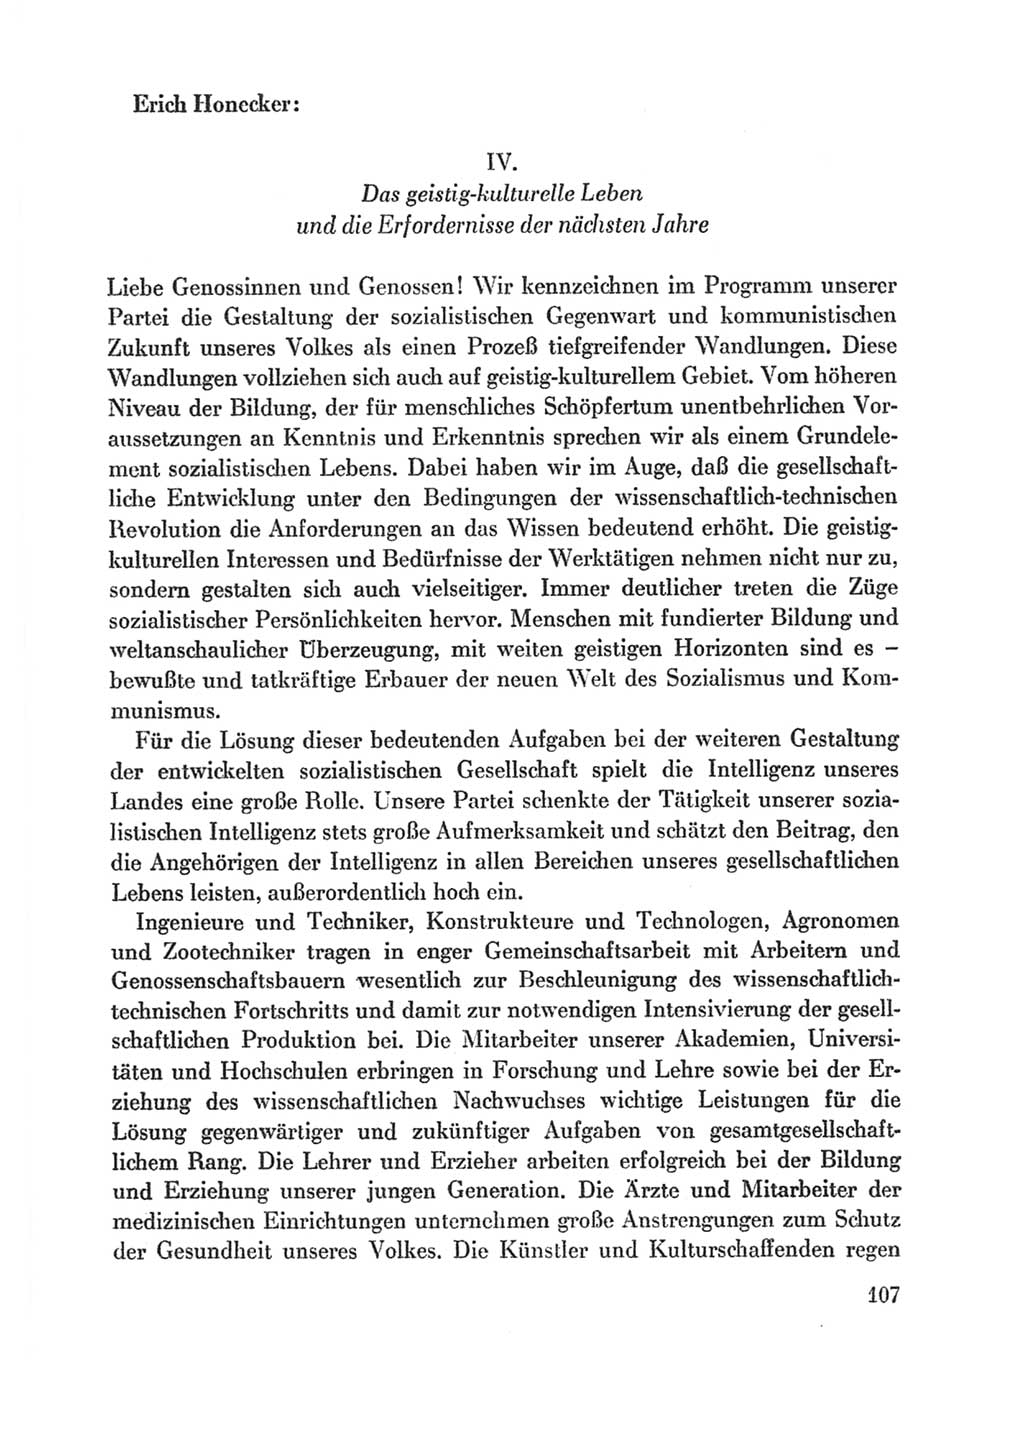 Protokoll der Verhandlungen des Ⅸ. Parteitages der Sozialistischen Einheitspartei Deutschlands (SED) [Deutsche Demokratische Republik (DDR)] 1976, Band 1, Seite 107 (Prot. Verh. Ⅸ. PT SED DDR 1976, Bd. 1, S. 107)